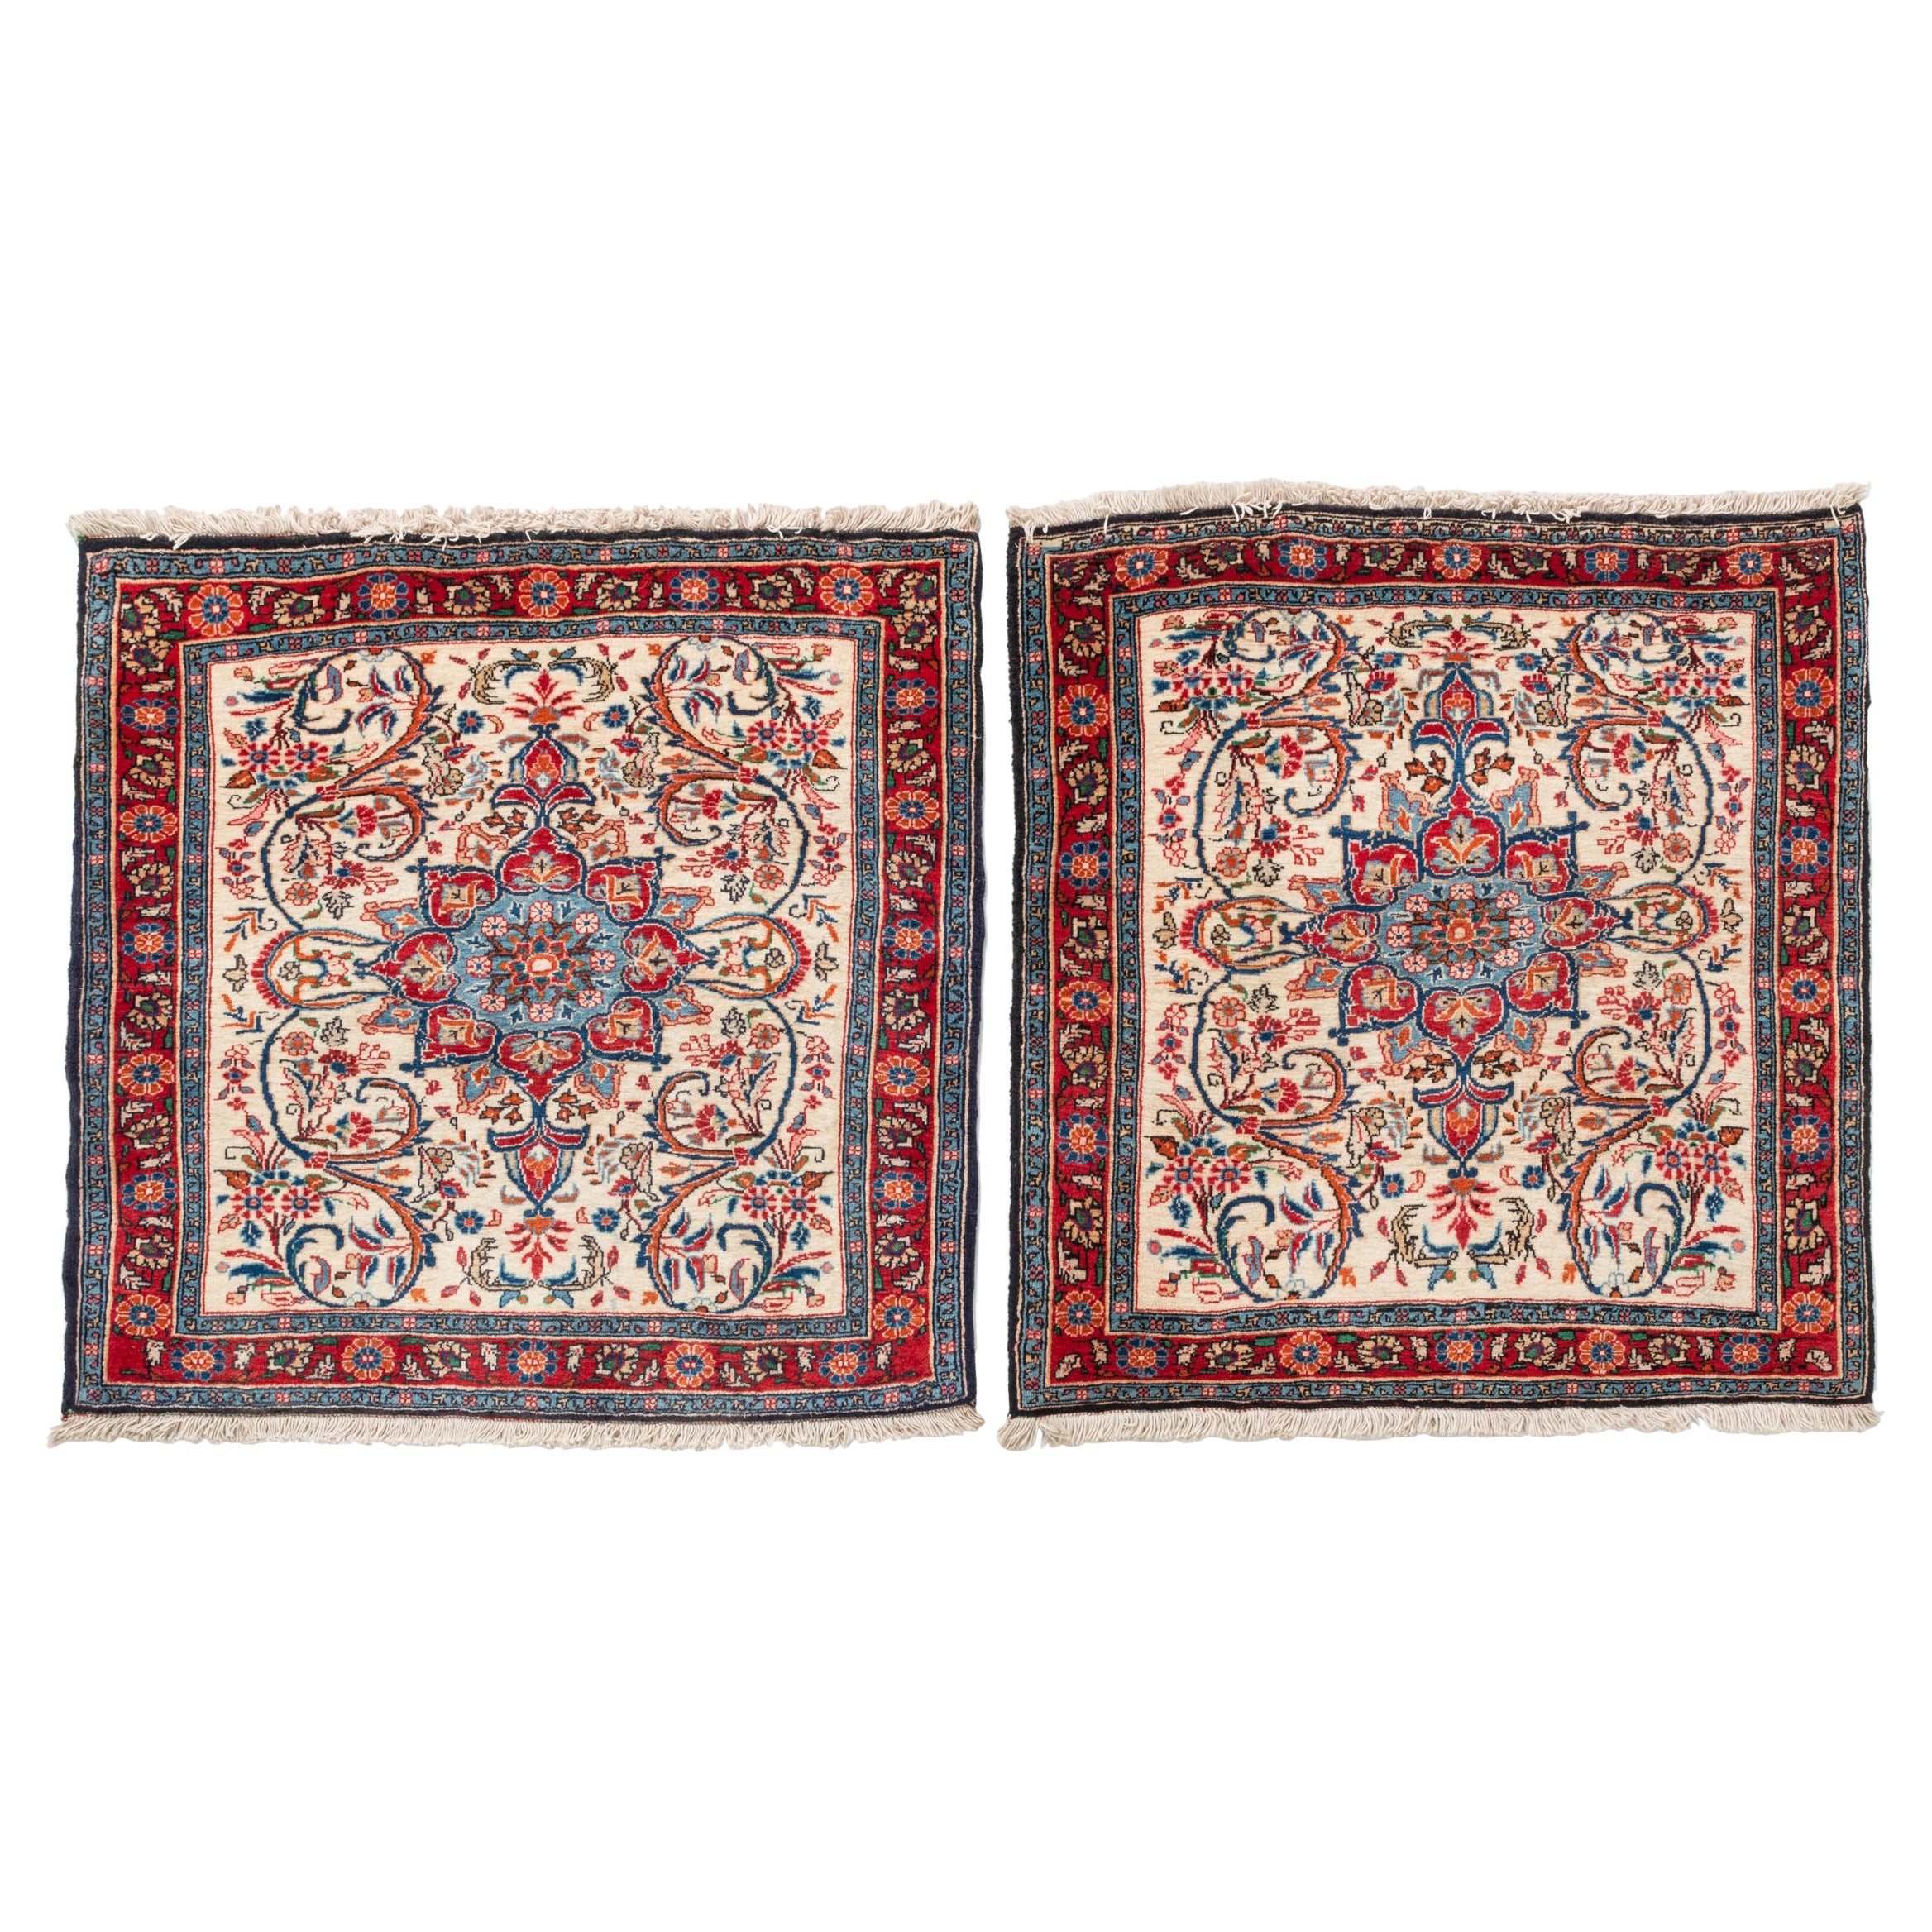 Paar kleine quadratische indische Teppiche oder Kissen